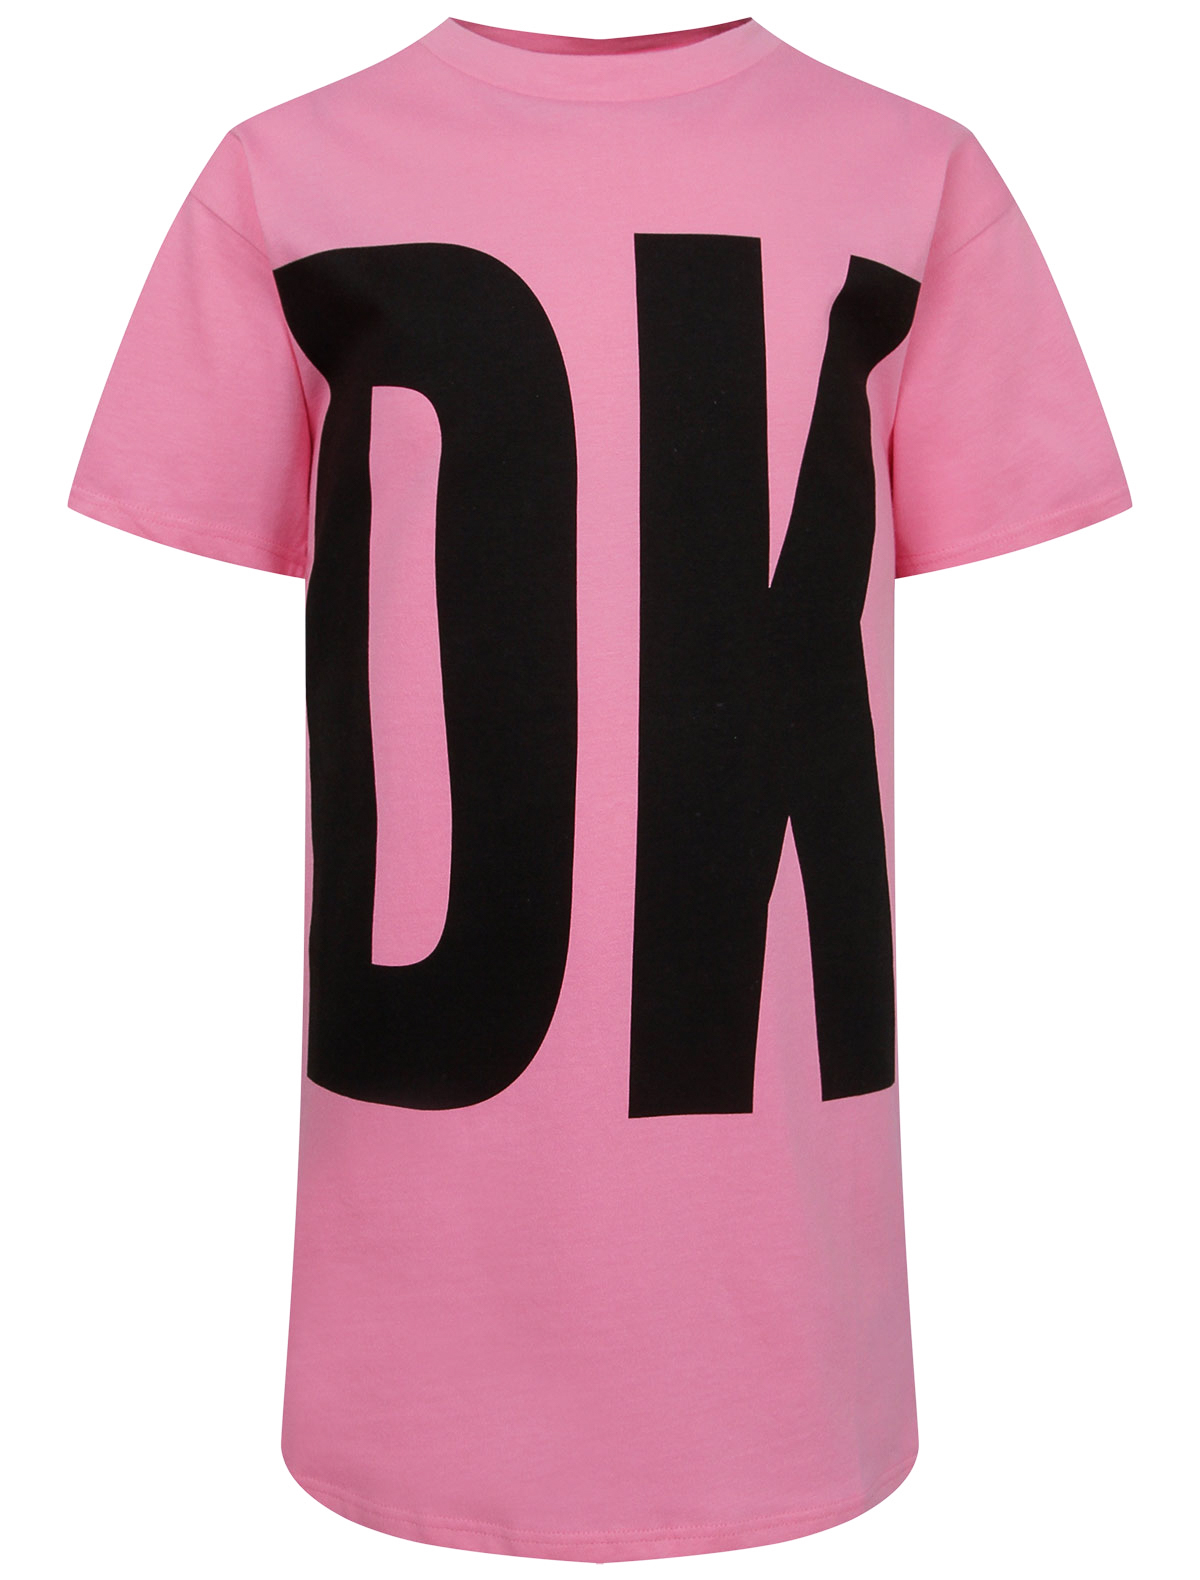 Платье DKNY розового цвета